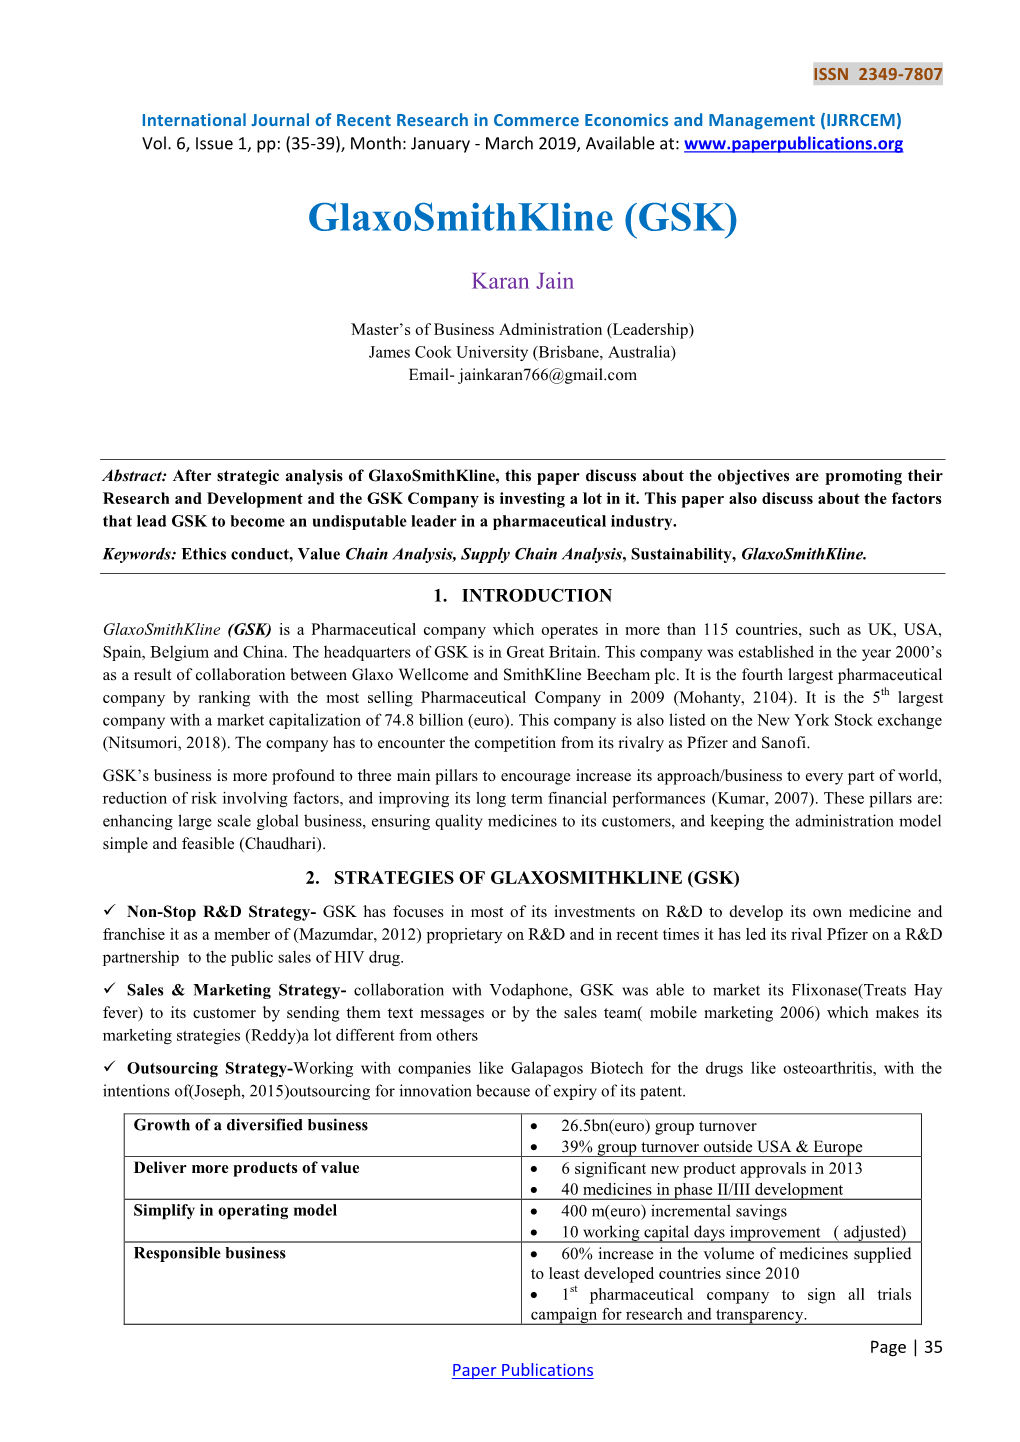 Glaxosmithkline (GSK)